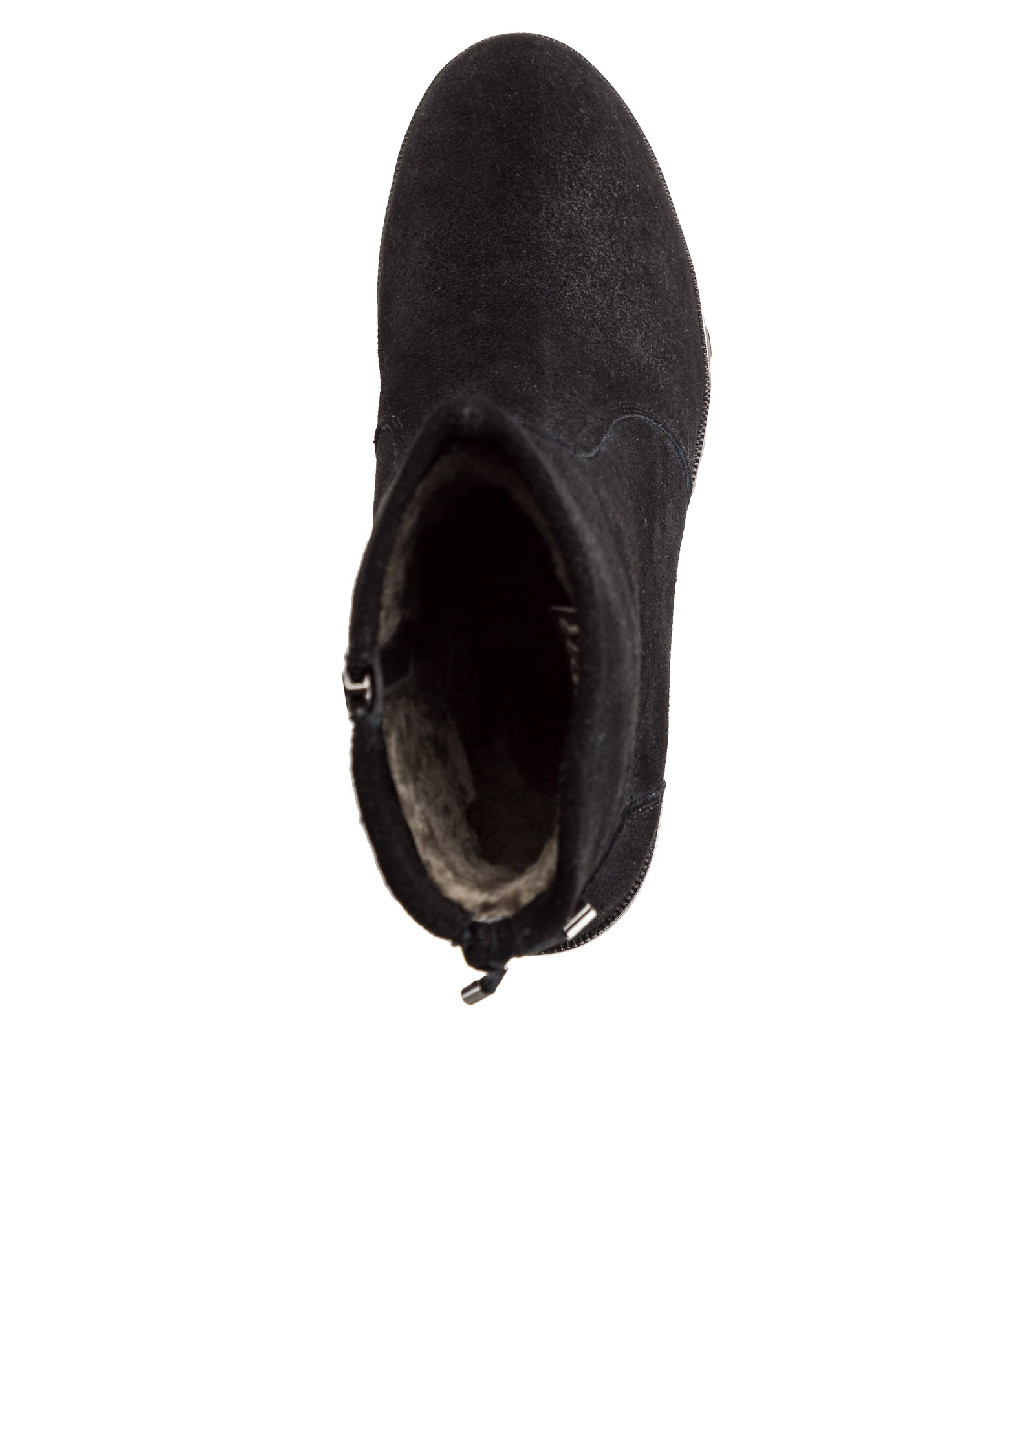 Осенние ботинки женские утепленные Elche из натурального велюра